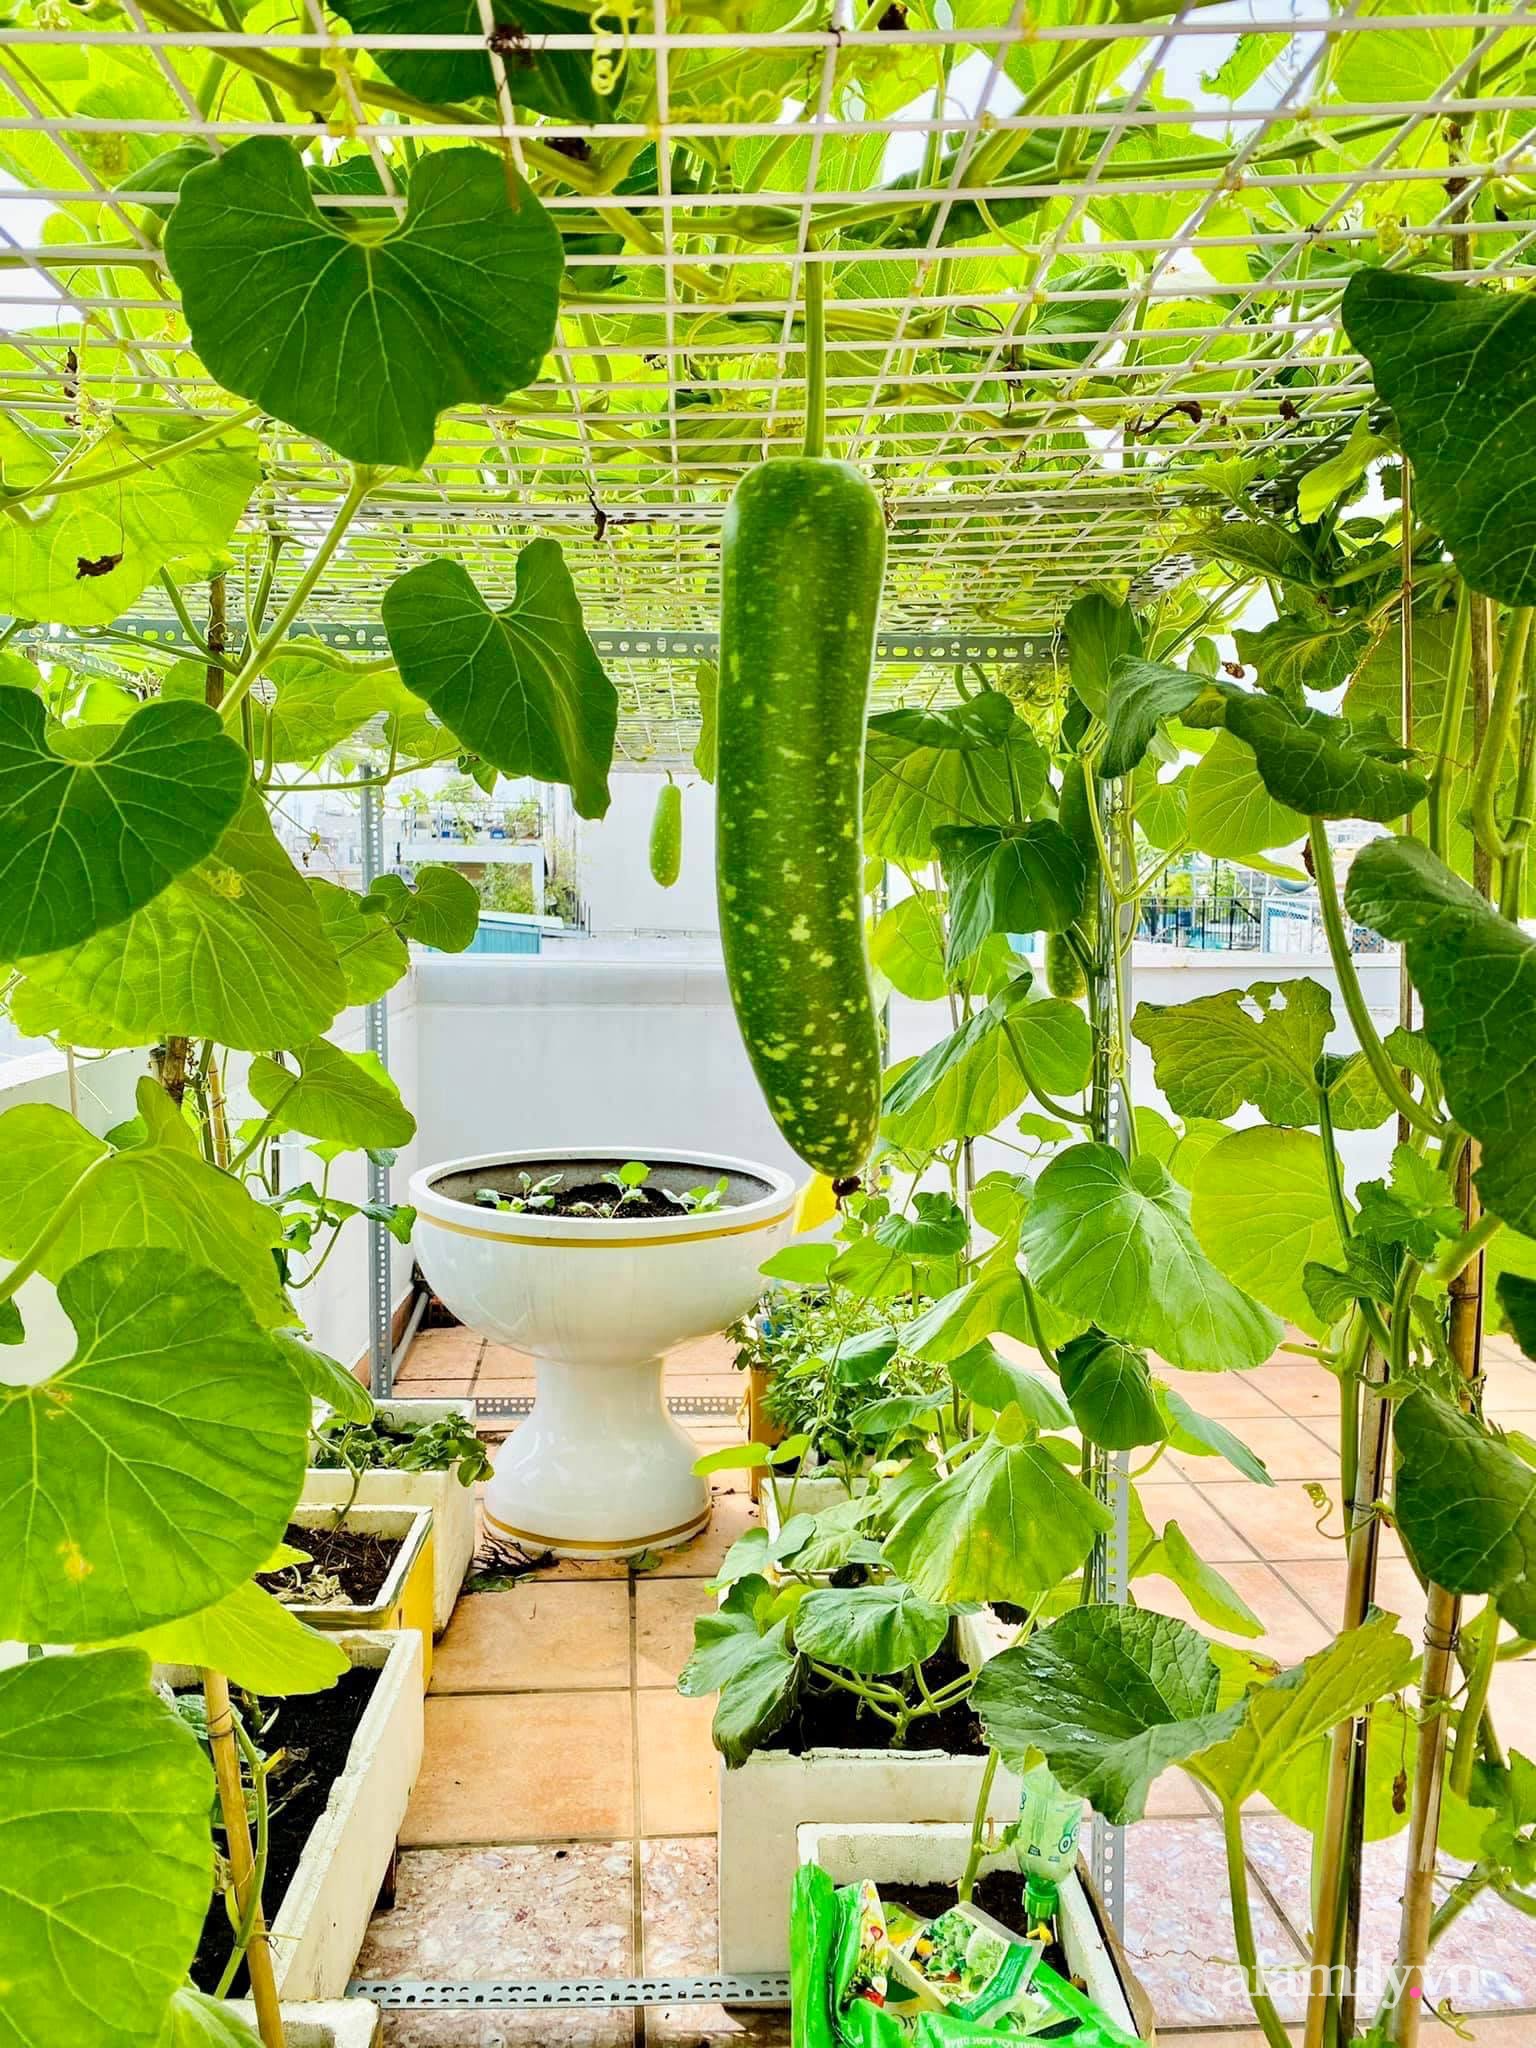 Bạn muốn trồng rau trong không gian nhỏ hẹp của căn nhà mình? Hãy nhấp chuột để xem một giải pháp tuyệt vời - Vườn rau đẹp trên sân thượng! Các loại rau xanh mướt, tươi ngon sẽ sẵn sàng cho các món ăn của bạn mỗi khi bạn muốn.